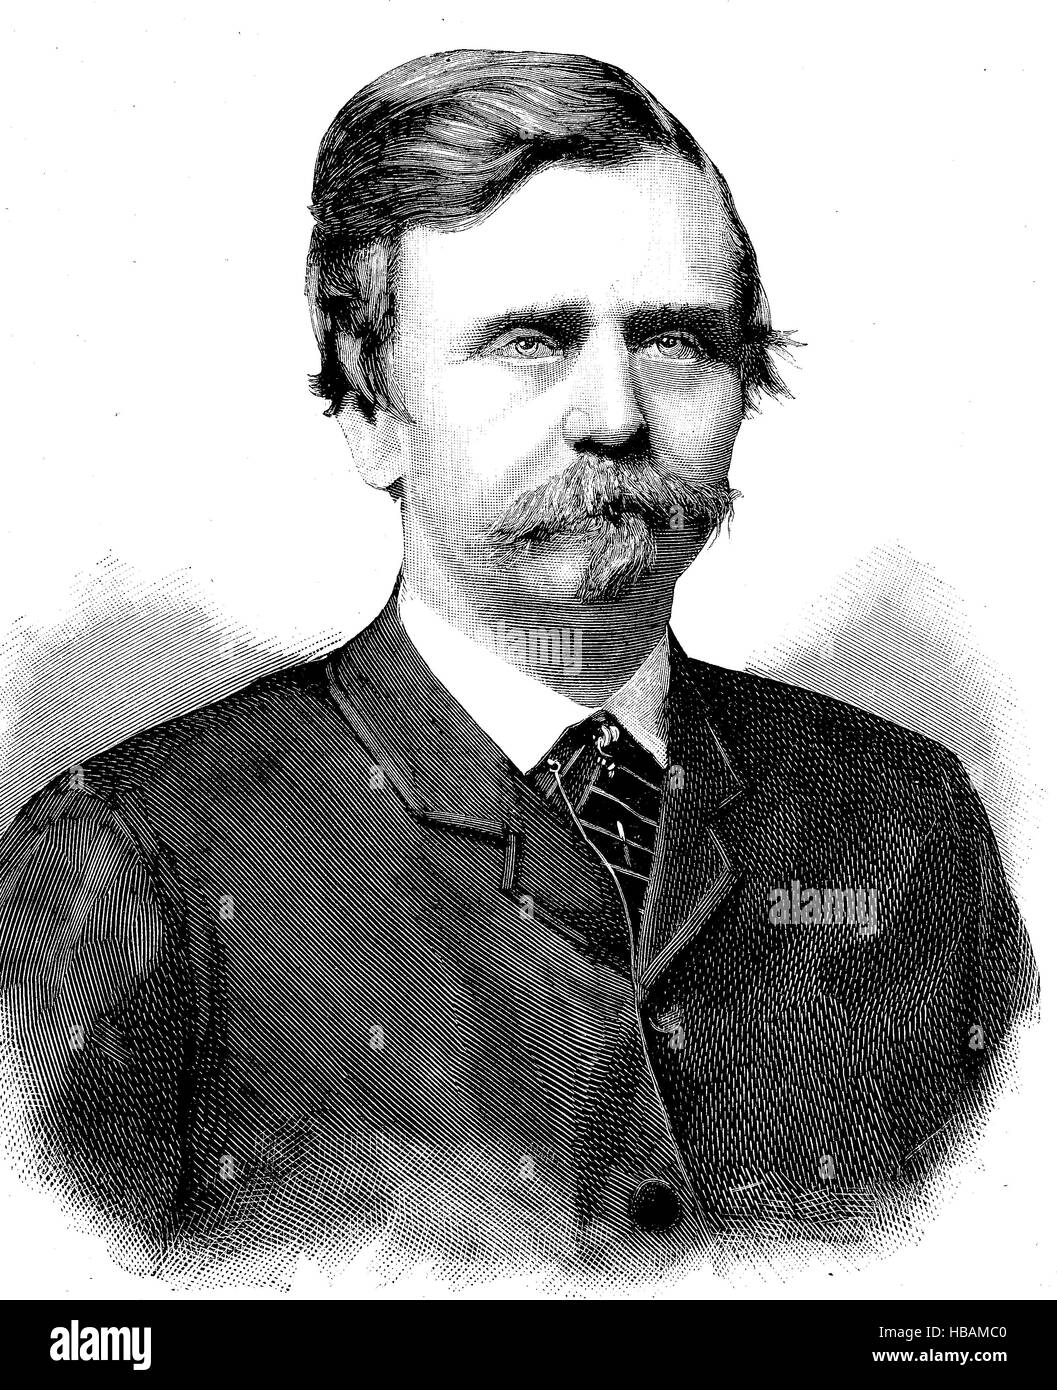 Count Gyula Szapary de Szapar Muraszombat Szechy-Sziget, et, le 1 novembre 1832 - 20 janvier 1905, était un homme politique hongrois qui a servi comme Premier Ministre de Hongrie de 1890 à 1892, l'illustration de 1880 hictorical Banque D'Images